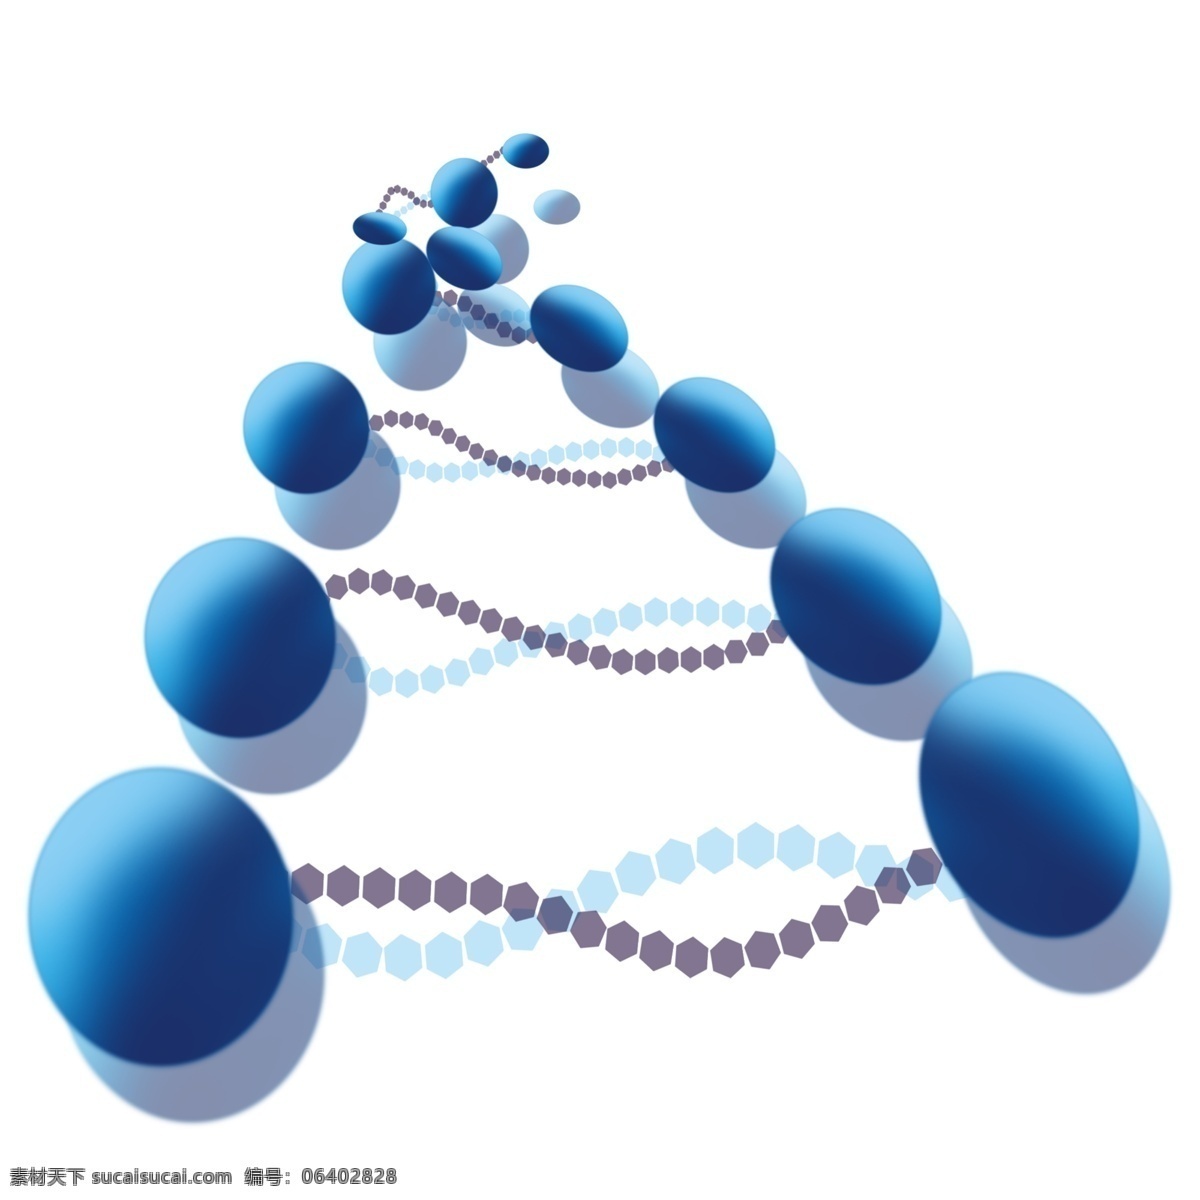 化学 分子 卡通 插画 蓝色的符号 卡通插画 化学插画 化学药品 化学分子 化学原子 化学的学科